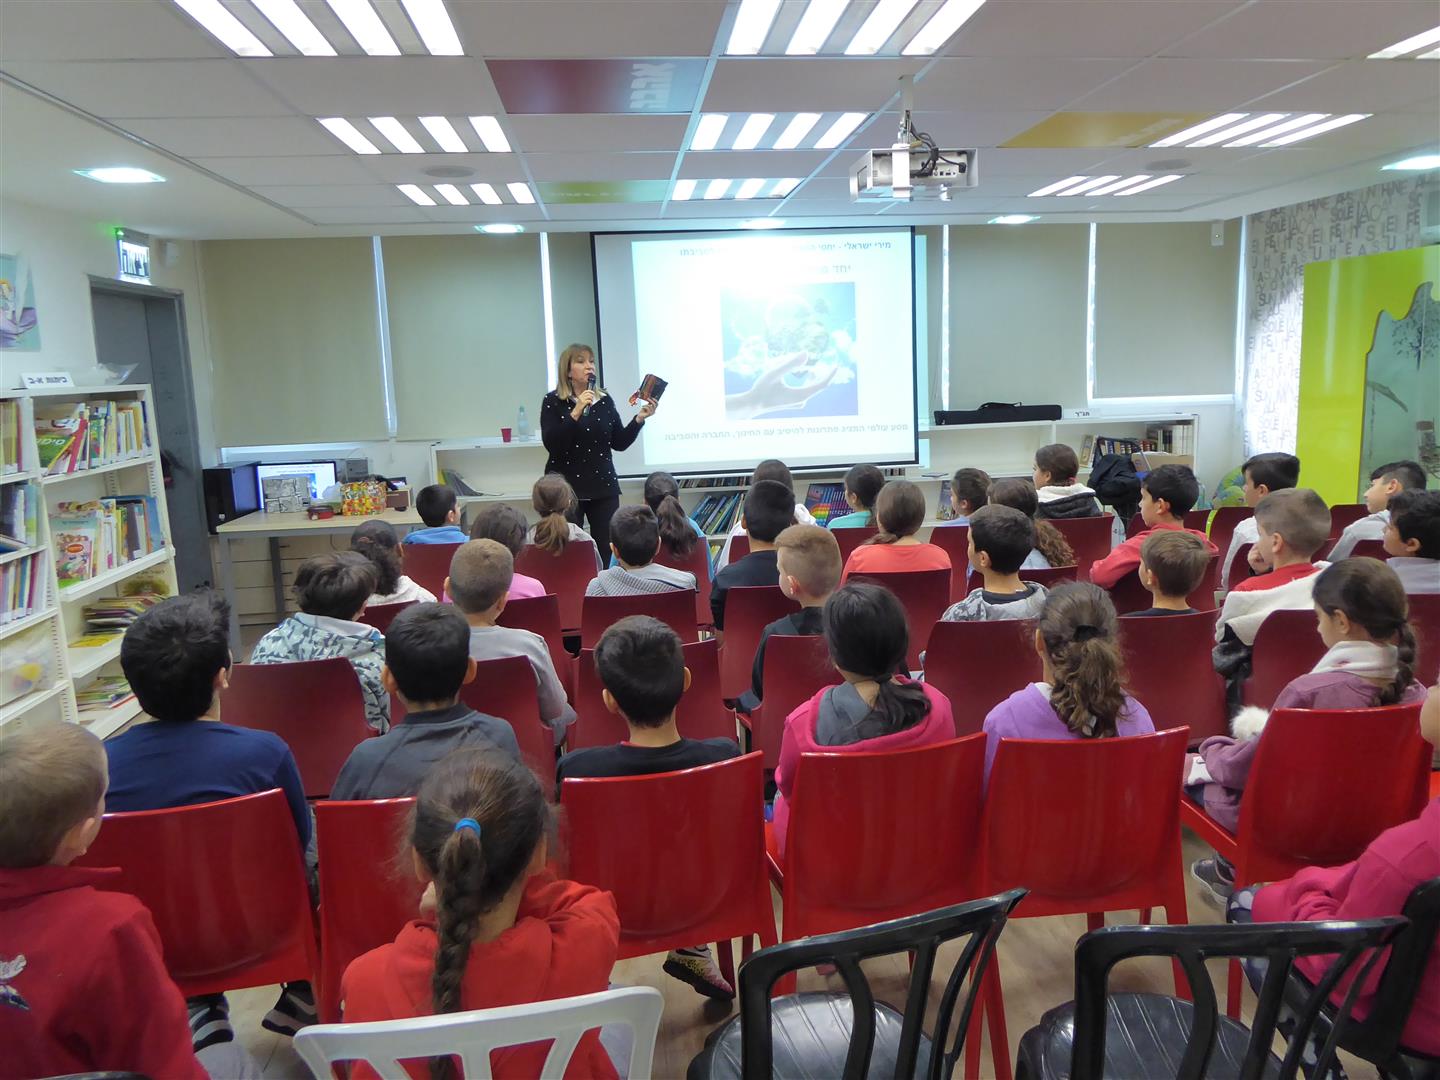 הרצאות העשרה לקידום החינוך הסביבתי לתלמידי יגאל אלון בבת ים